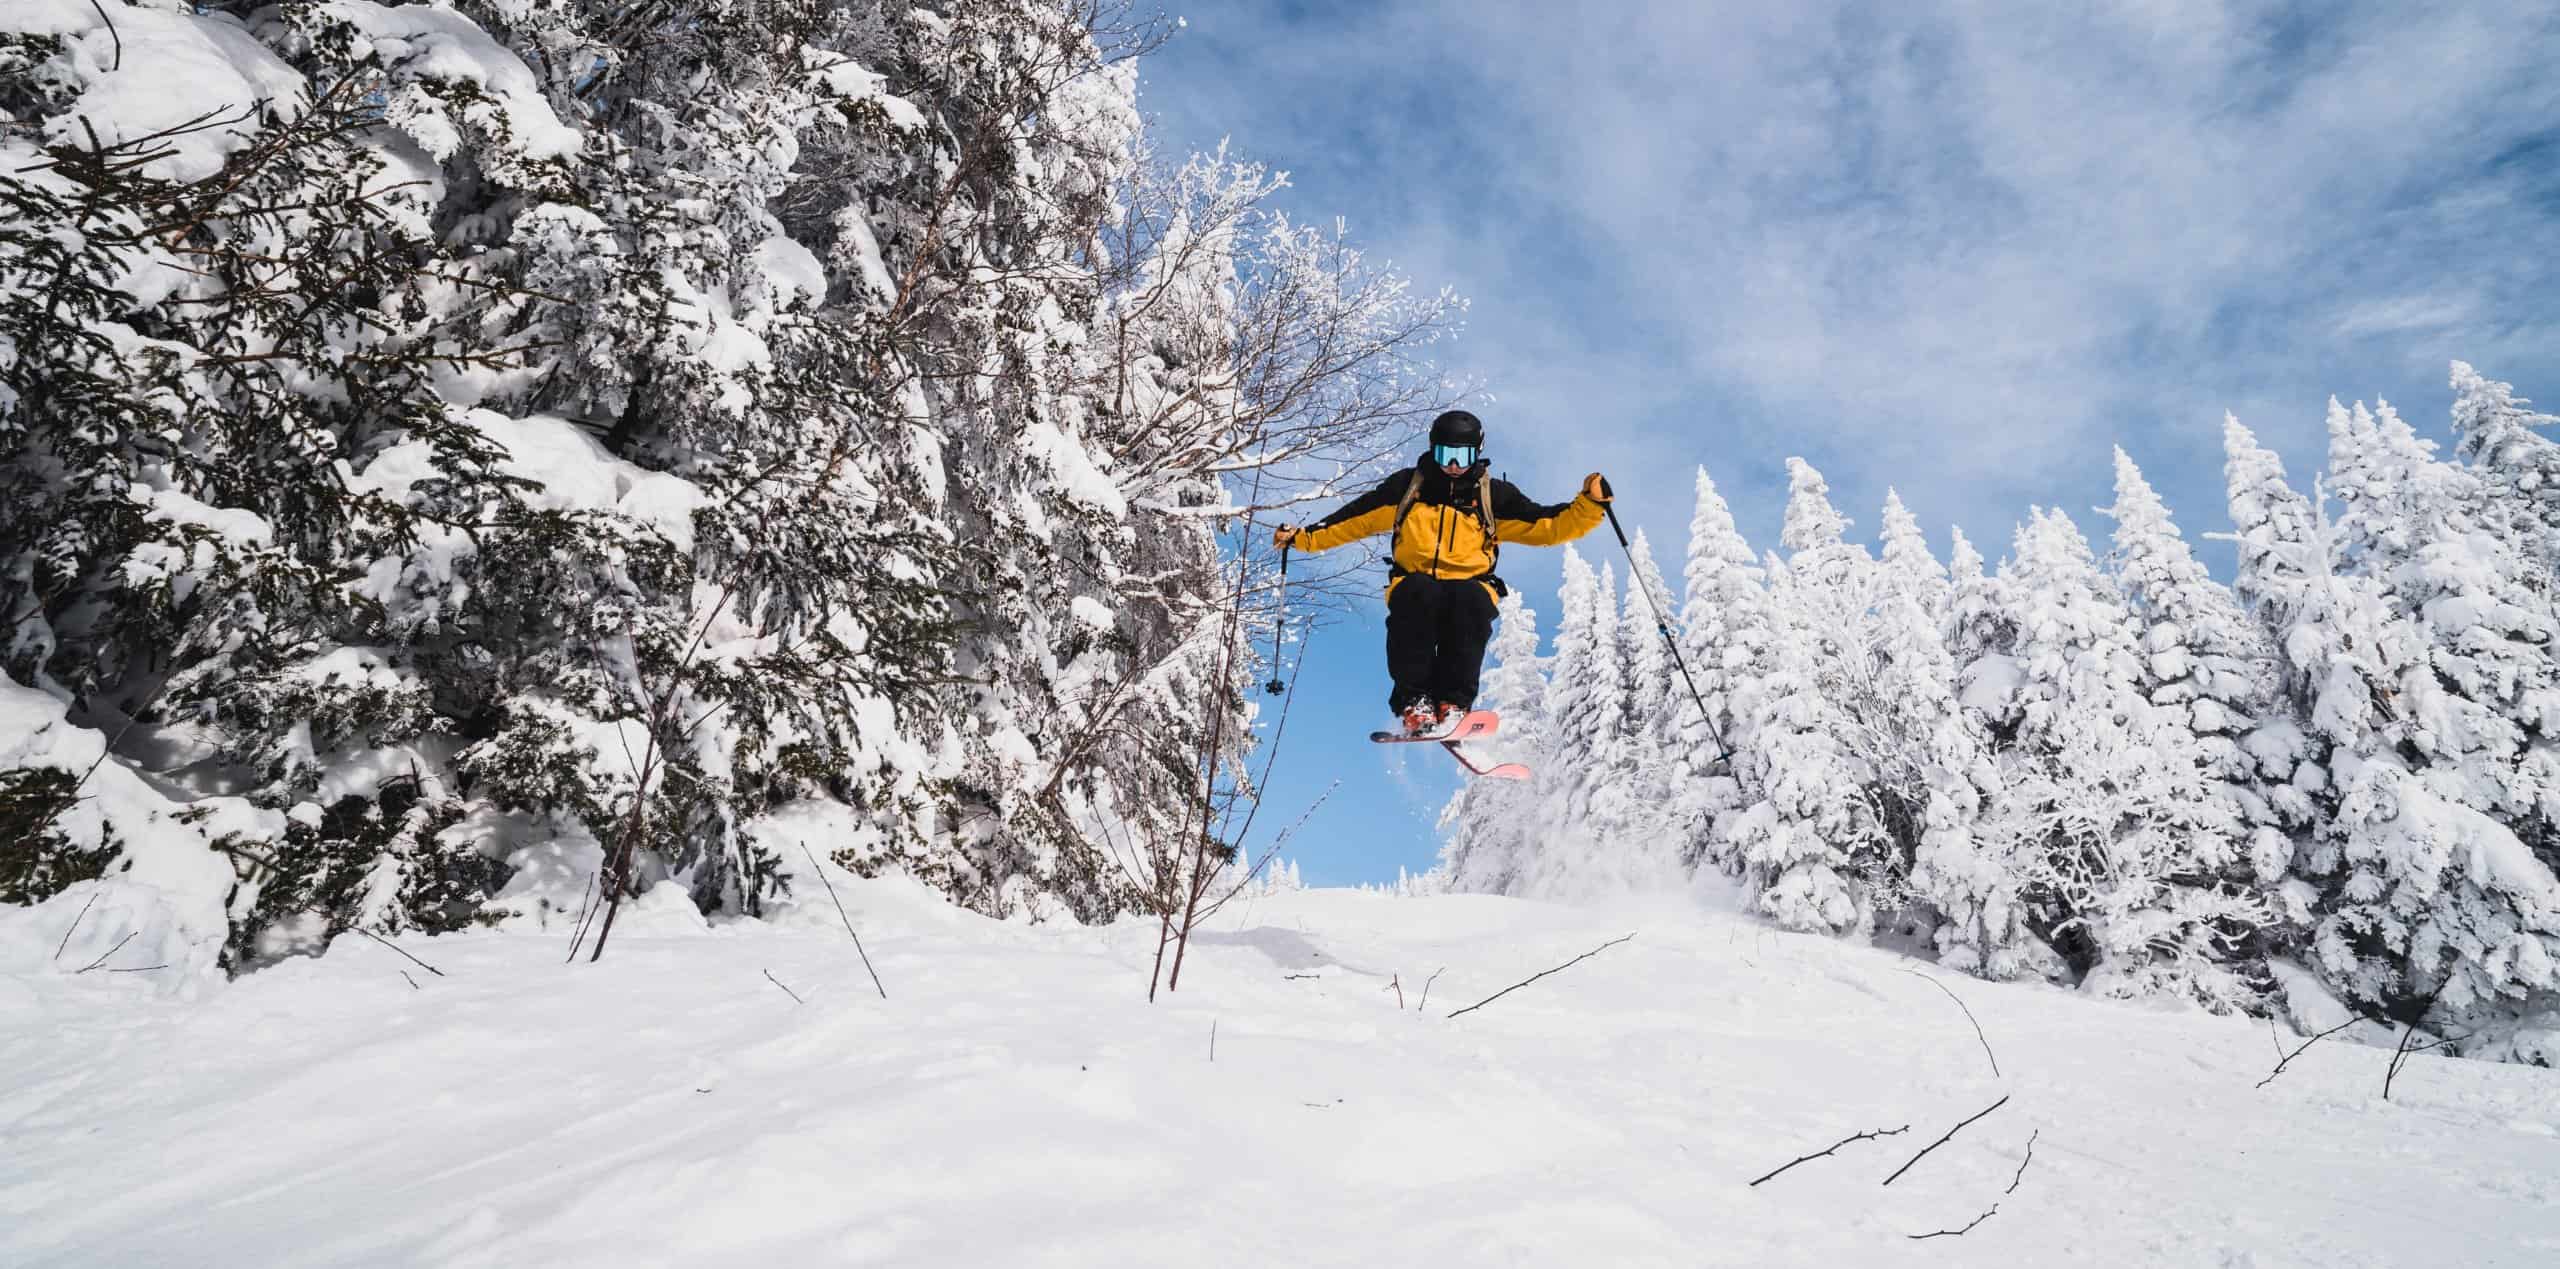 Bolton Valley - Skier Jumping